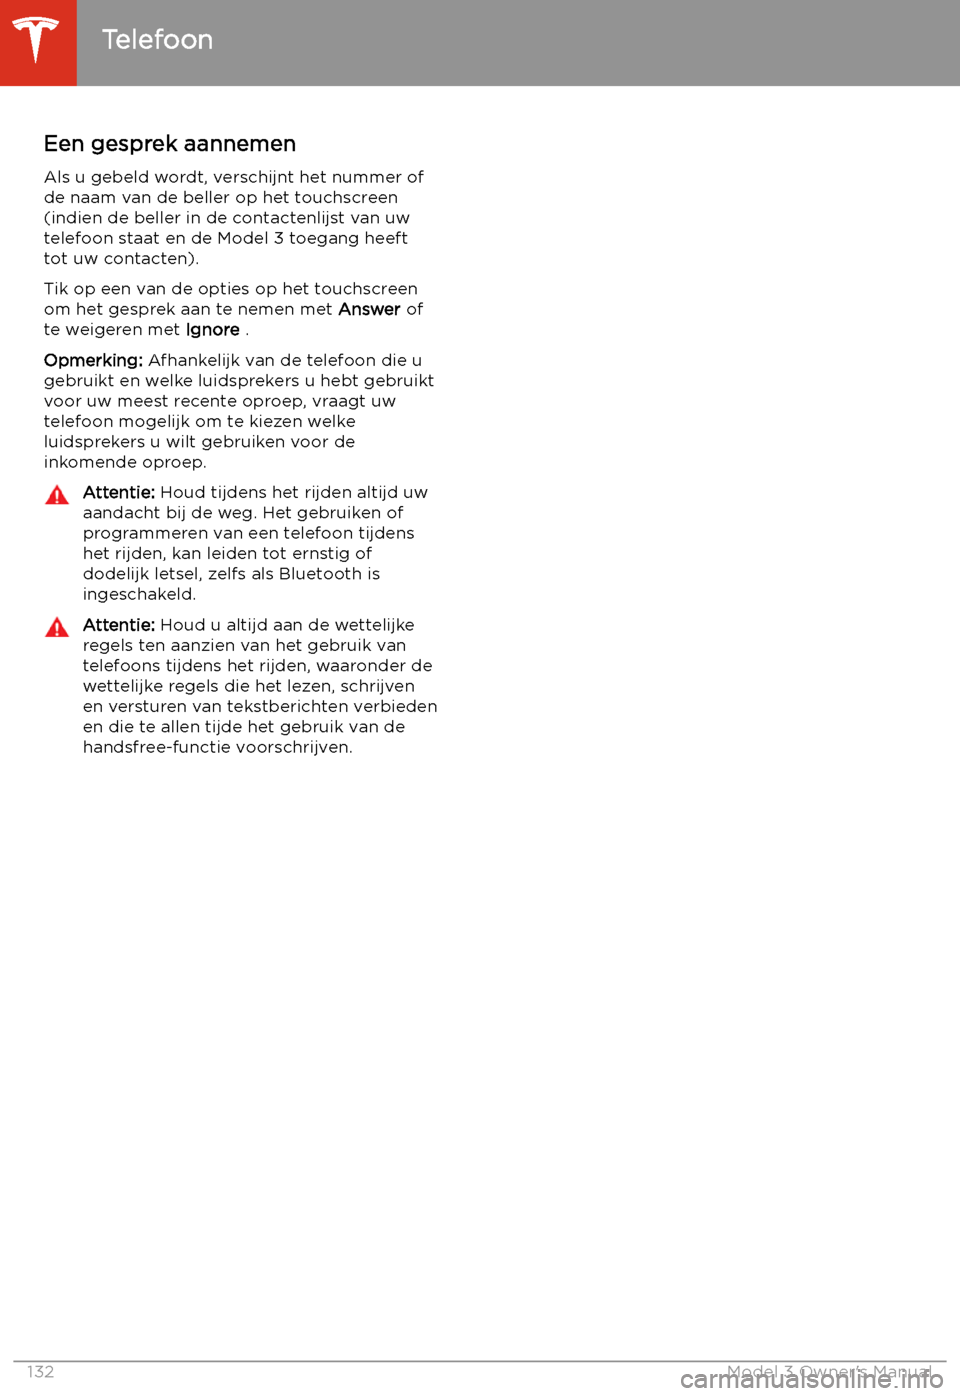 TESLA MODEL 3 2019  Handleiding (in Dutch) Een gesprek aannemen
Als u gebeld wordt, verschijnt het nummer of
de naam van de beller op het touchscreen (indien de beller in de contactenlijst van uw
telefoon staat en de Model 3 toegang heeft tot 